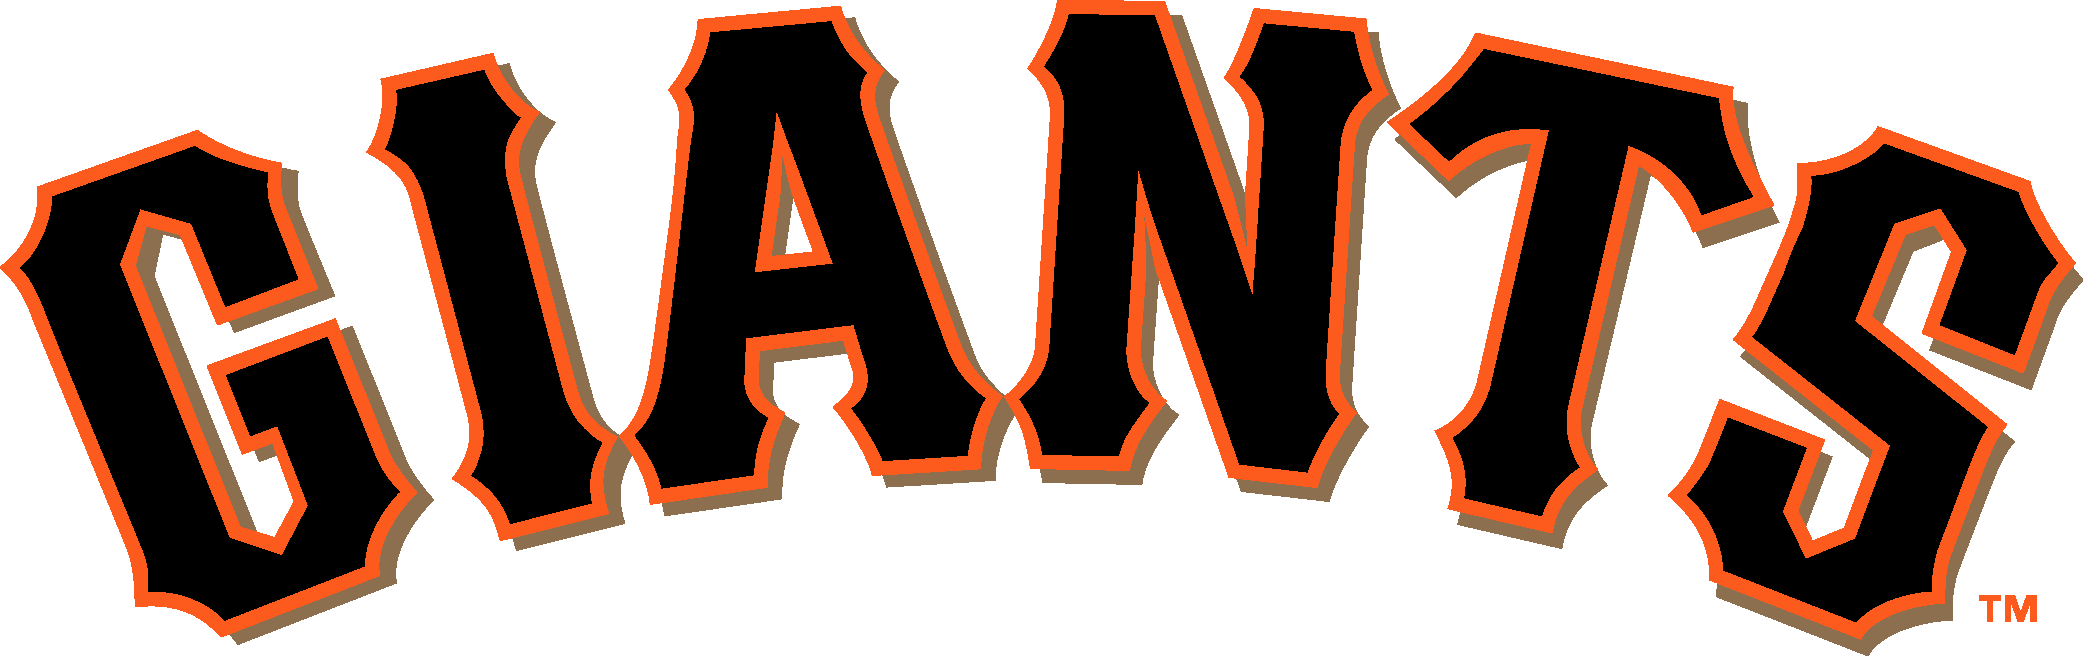 San Francisco Giants Logo png